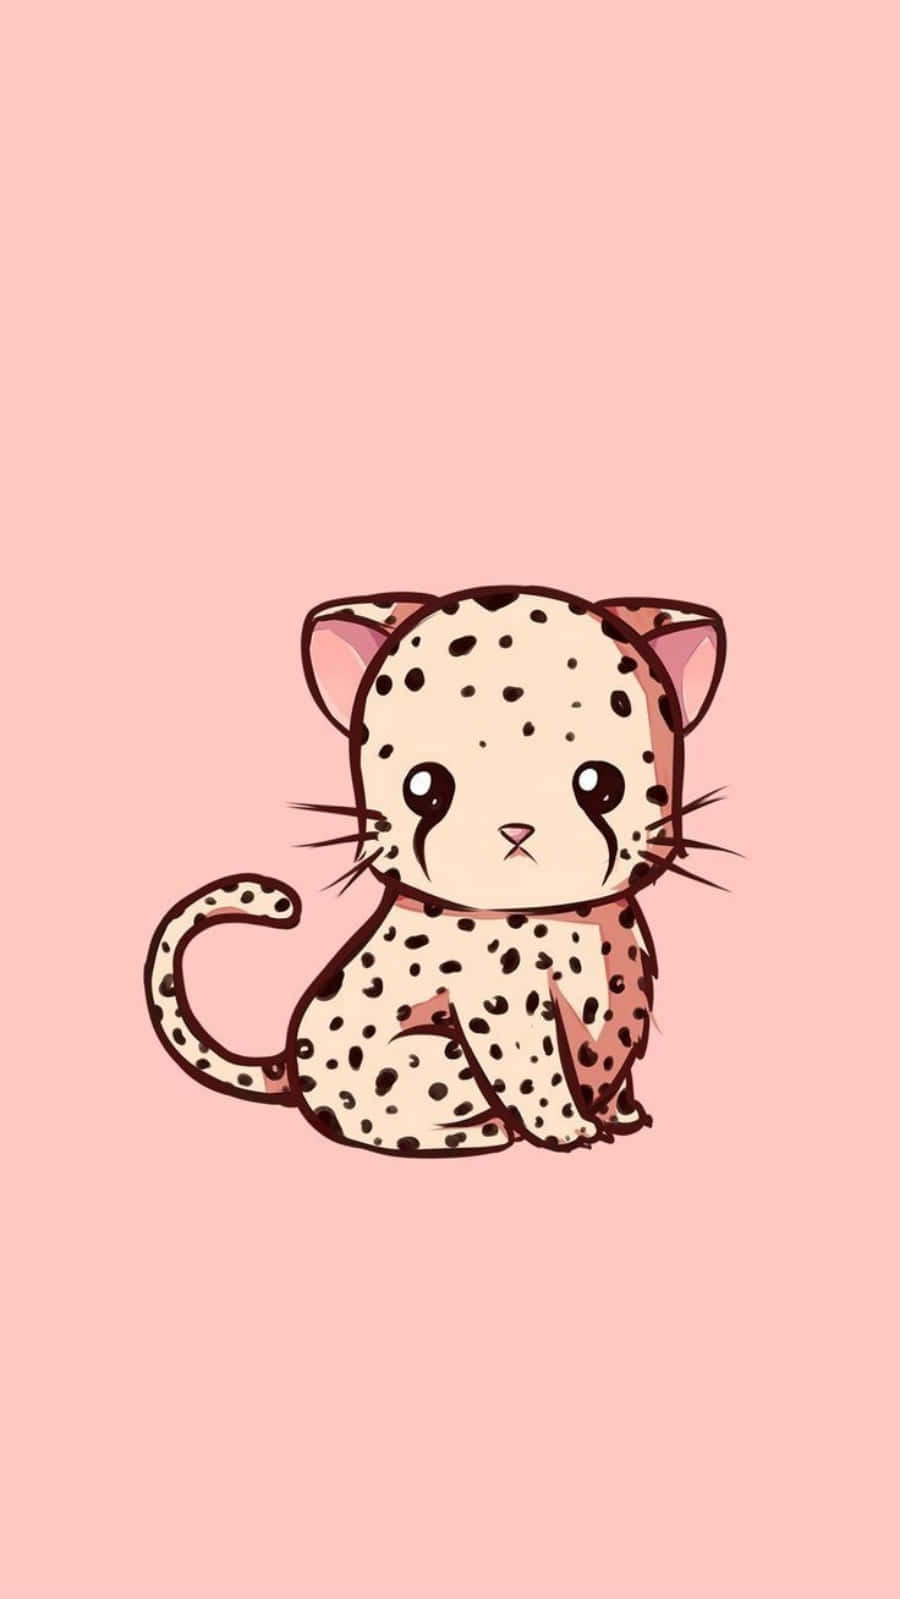 Imagende Un Lindo Cheetah Minimalista De Animales En Caricatura.